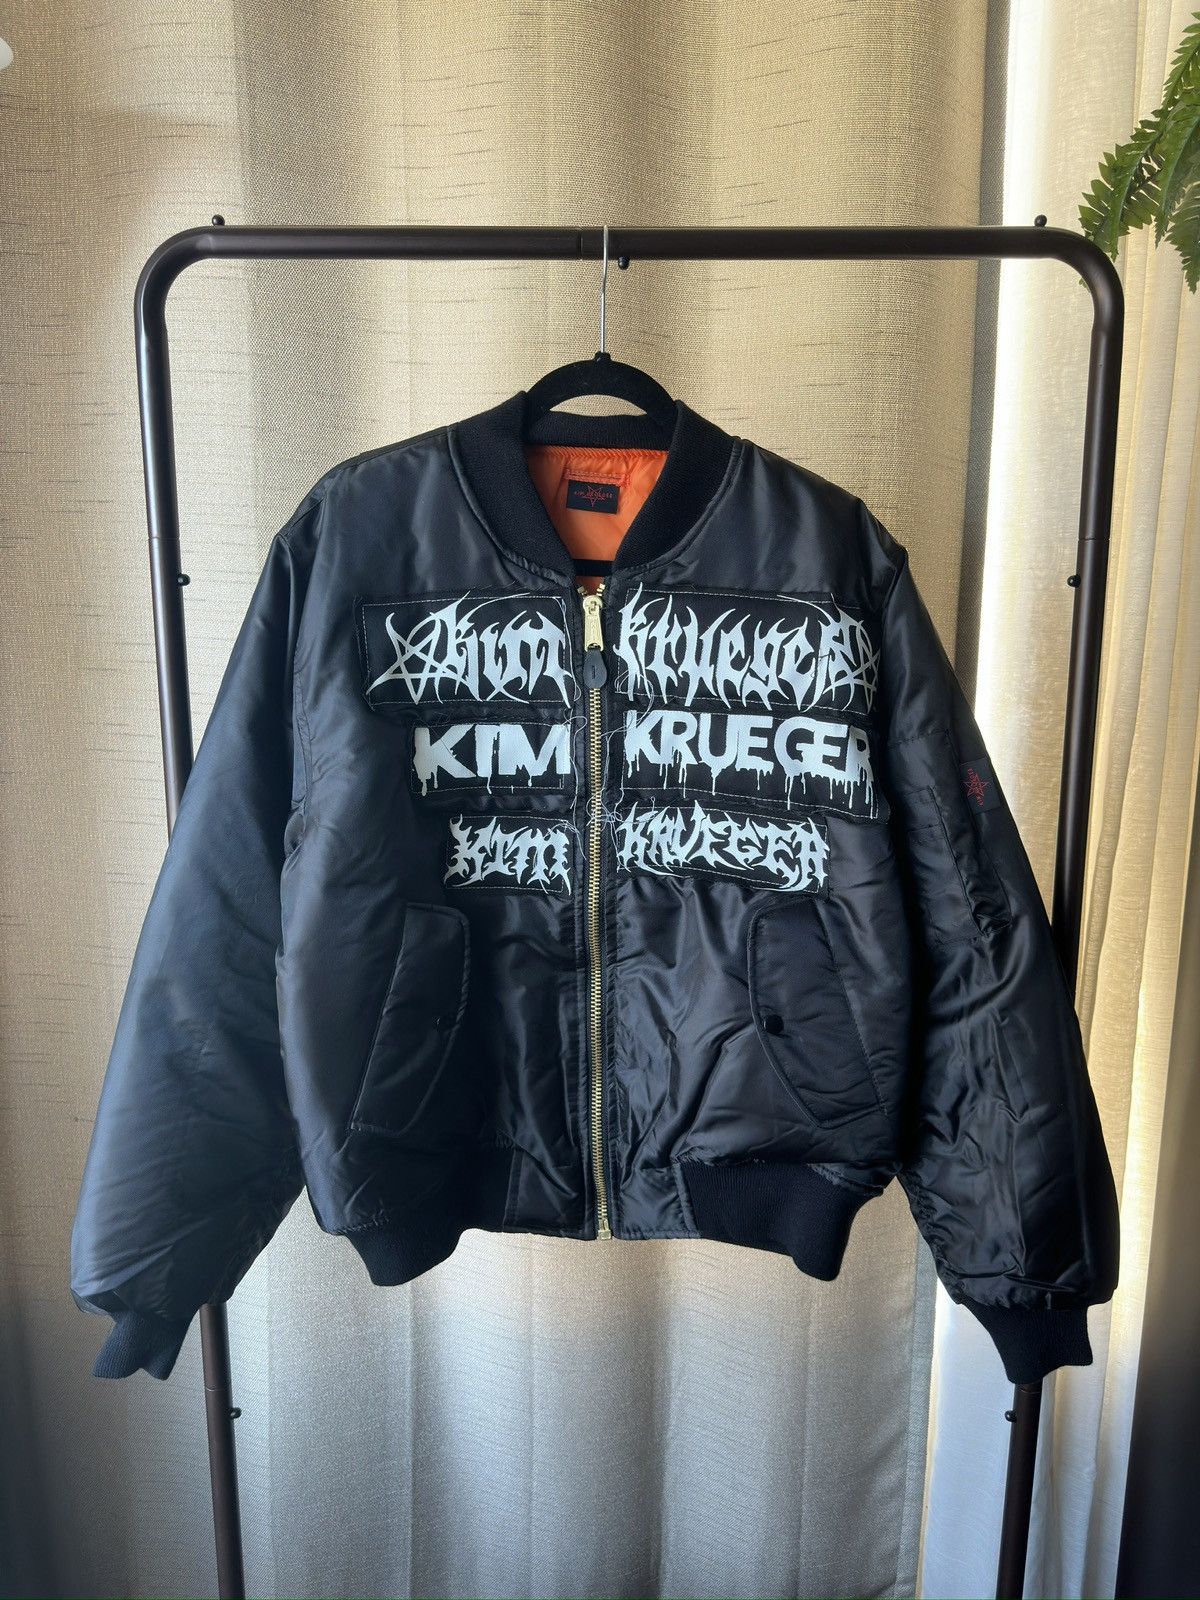 Kim Krueger Kim Krueger Bomber Jacket | Grailed